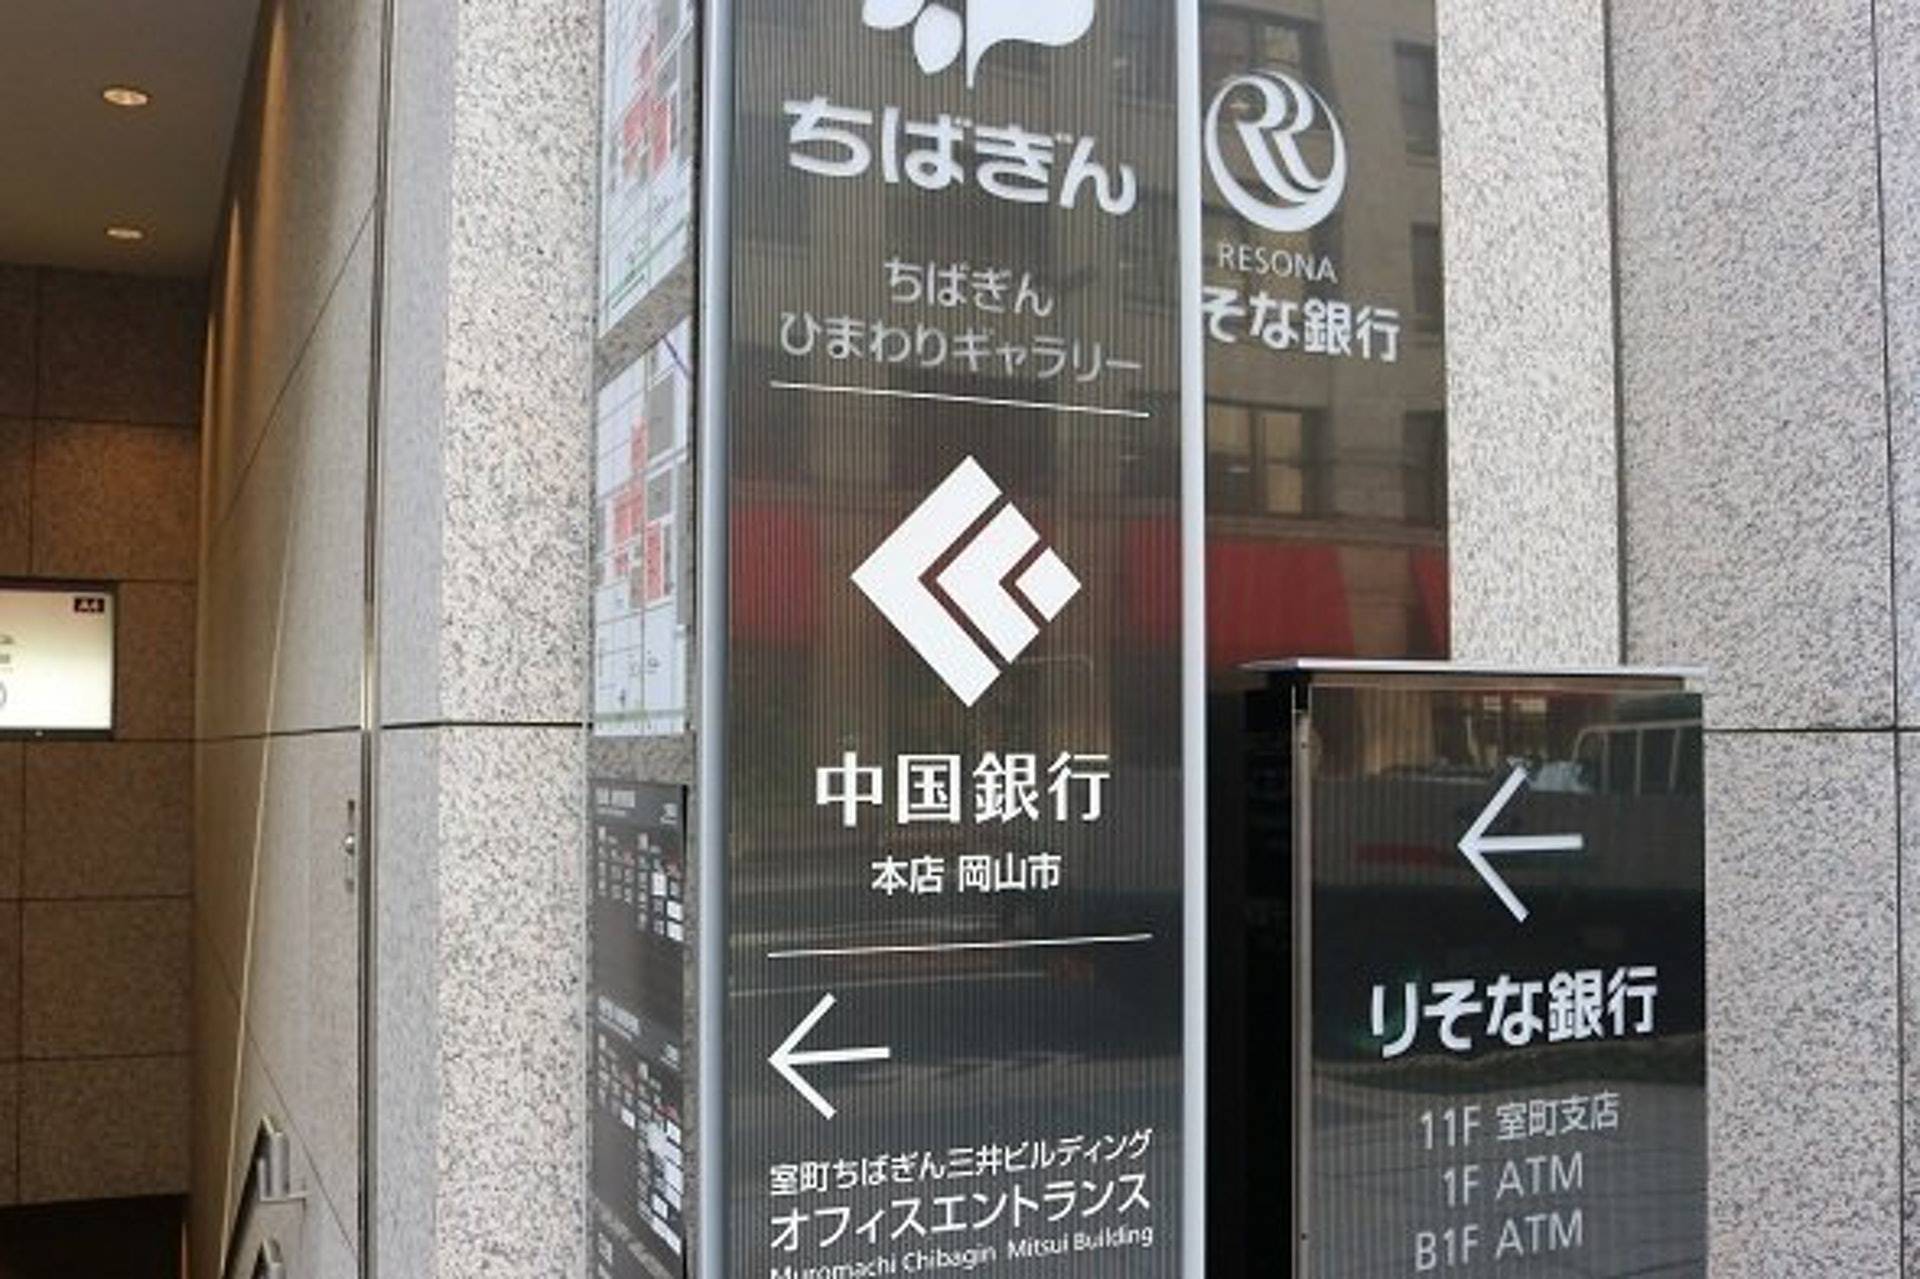 原创日本也有“中国银行”？简体字告示称与中国无关，网友：天大误会